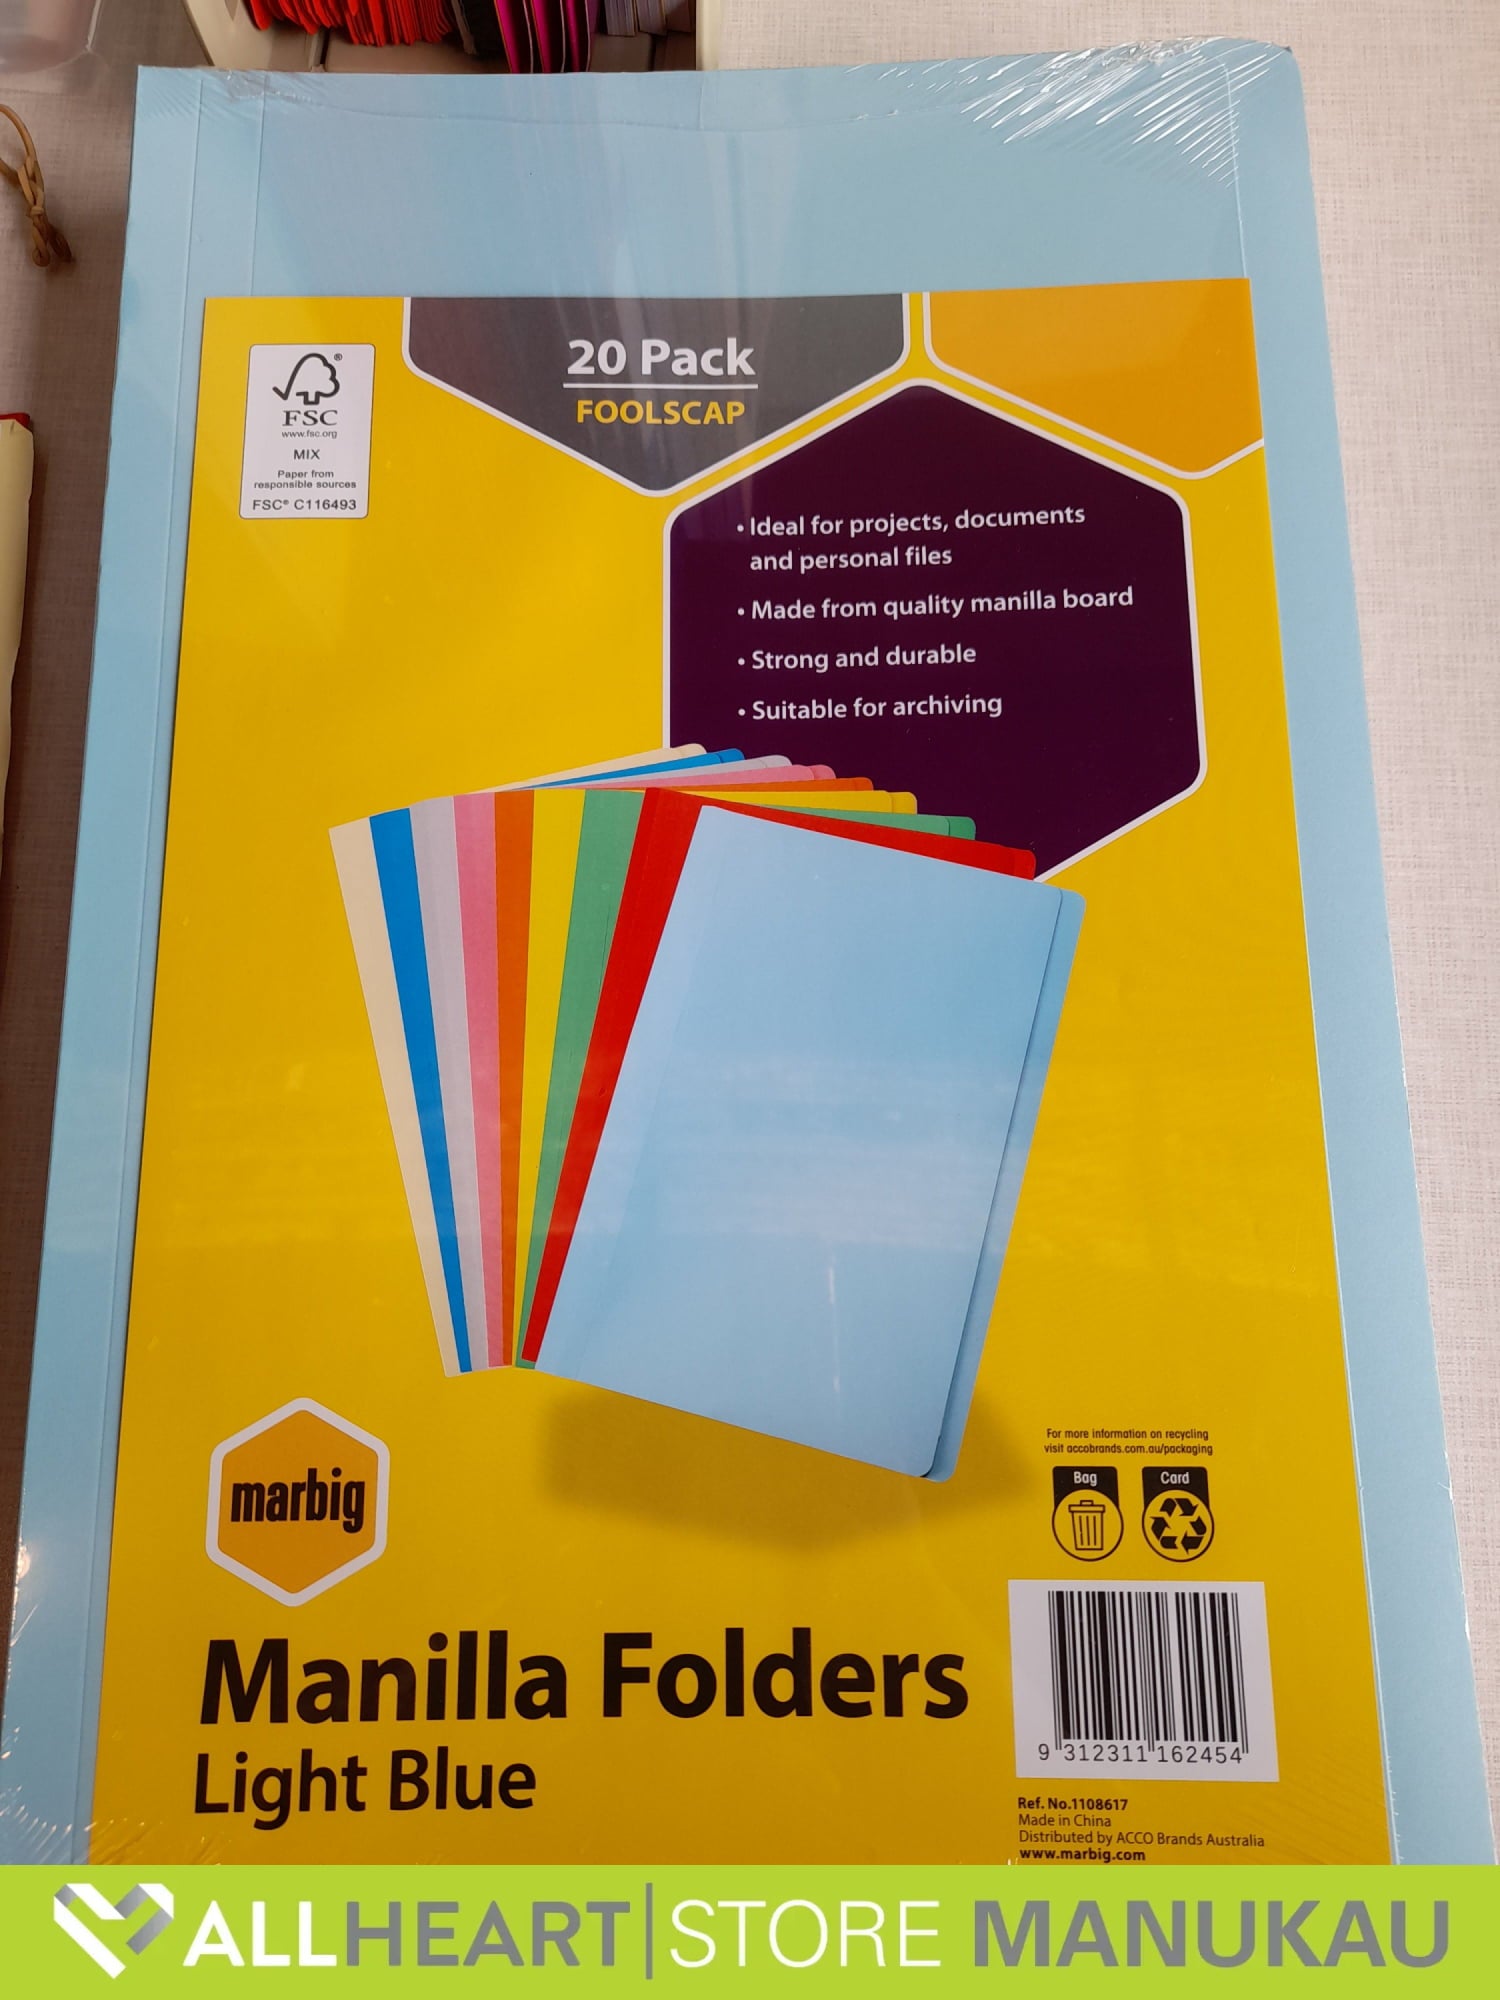 Manilla Folders - Light Blue 20 Pack